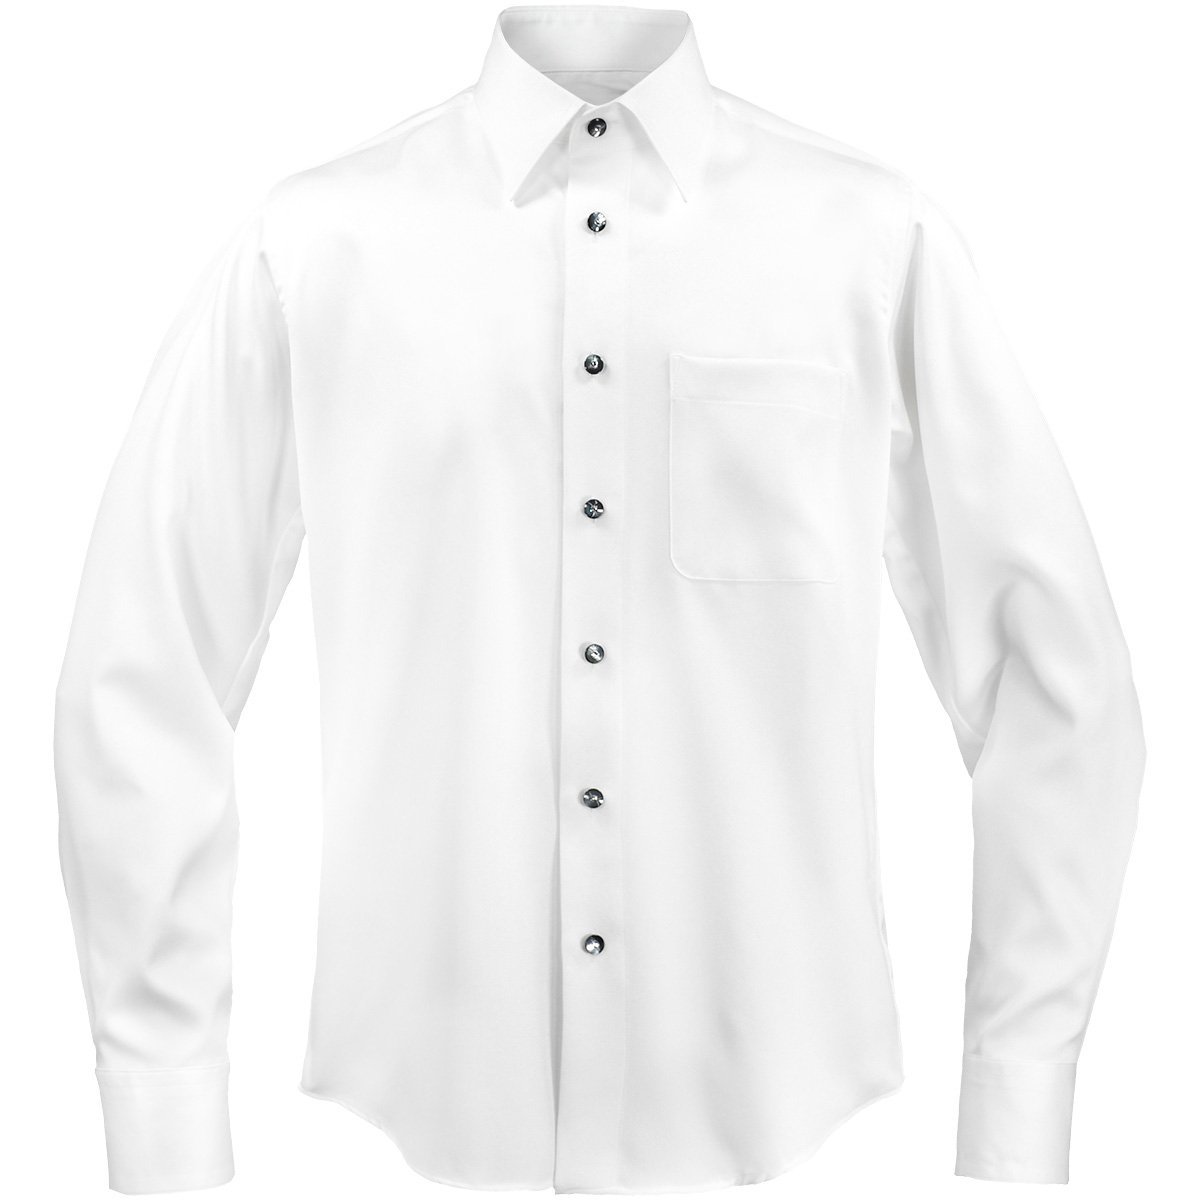 21170-1wh サテンシャツ ラインストーンボタンドレスシャツ パウダーサテン レギュラーカラー パーティー メンズ (ホワイト白・ボタンB) XL_画像8